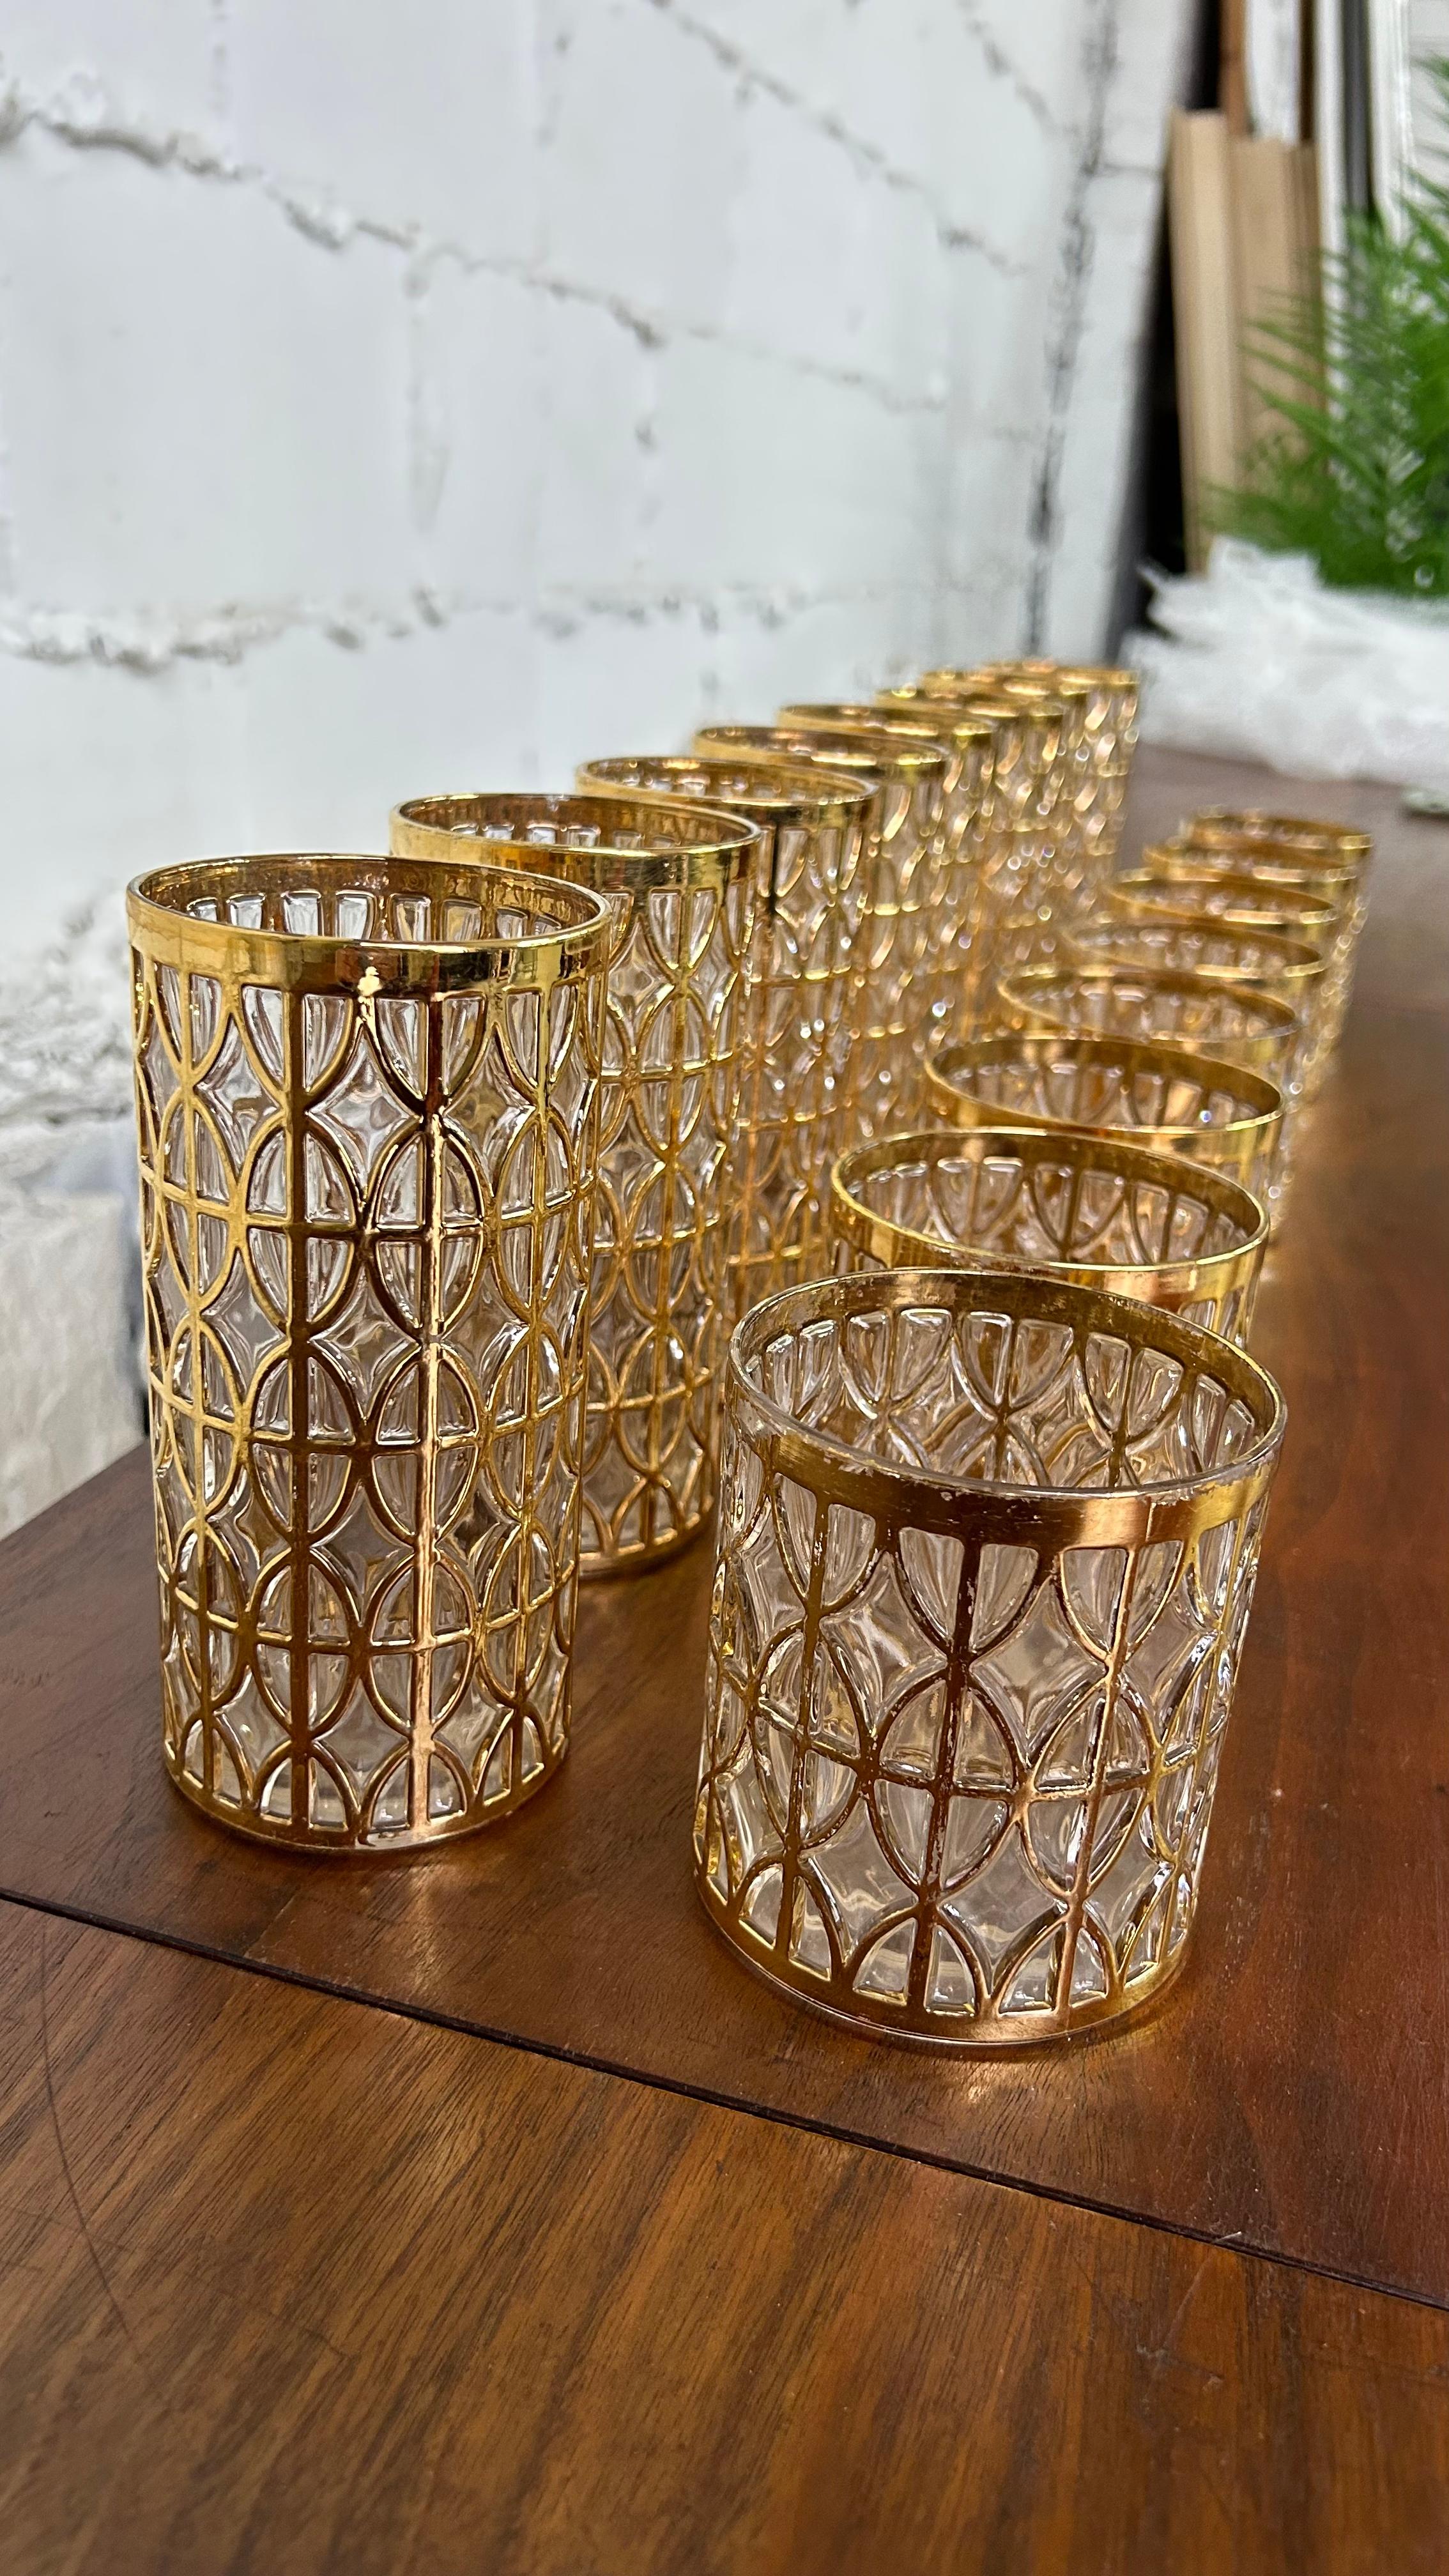 22k Gold Imperial Glassware/ Barware - 16-teiliges Set! 
Dieses Set enthält das Muster 